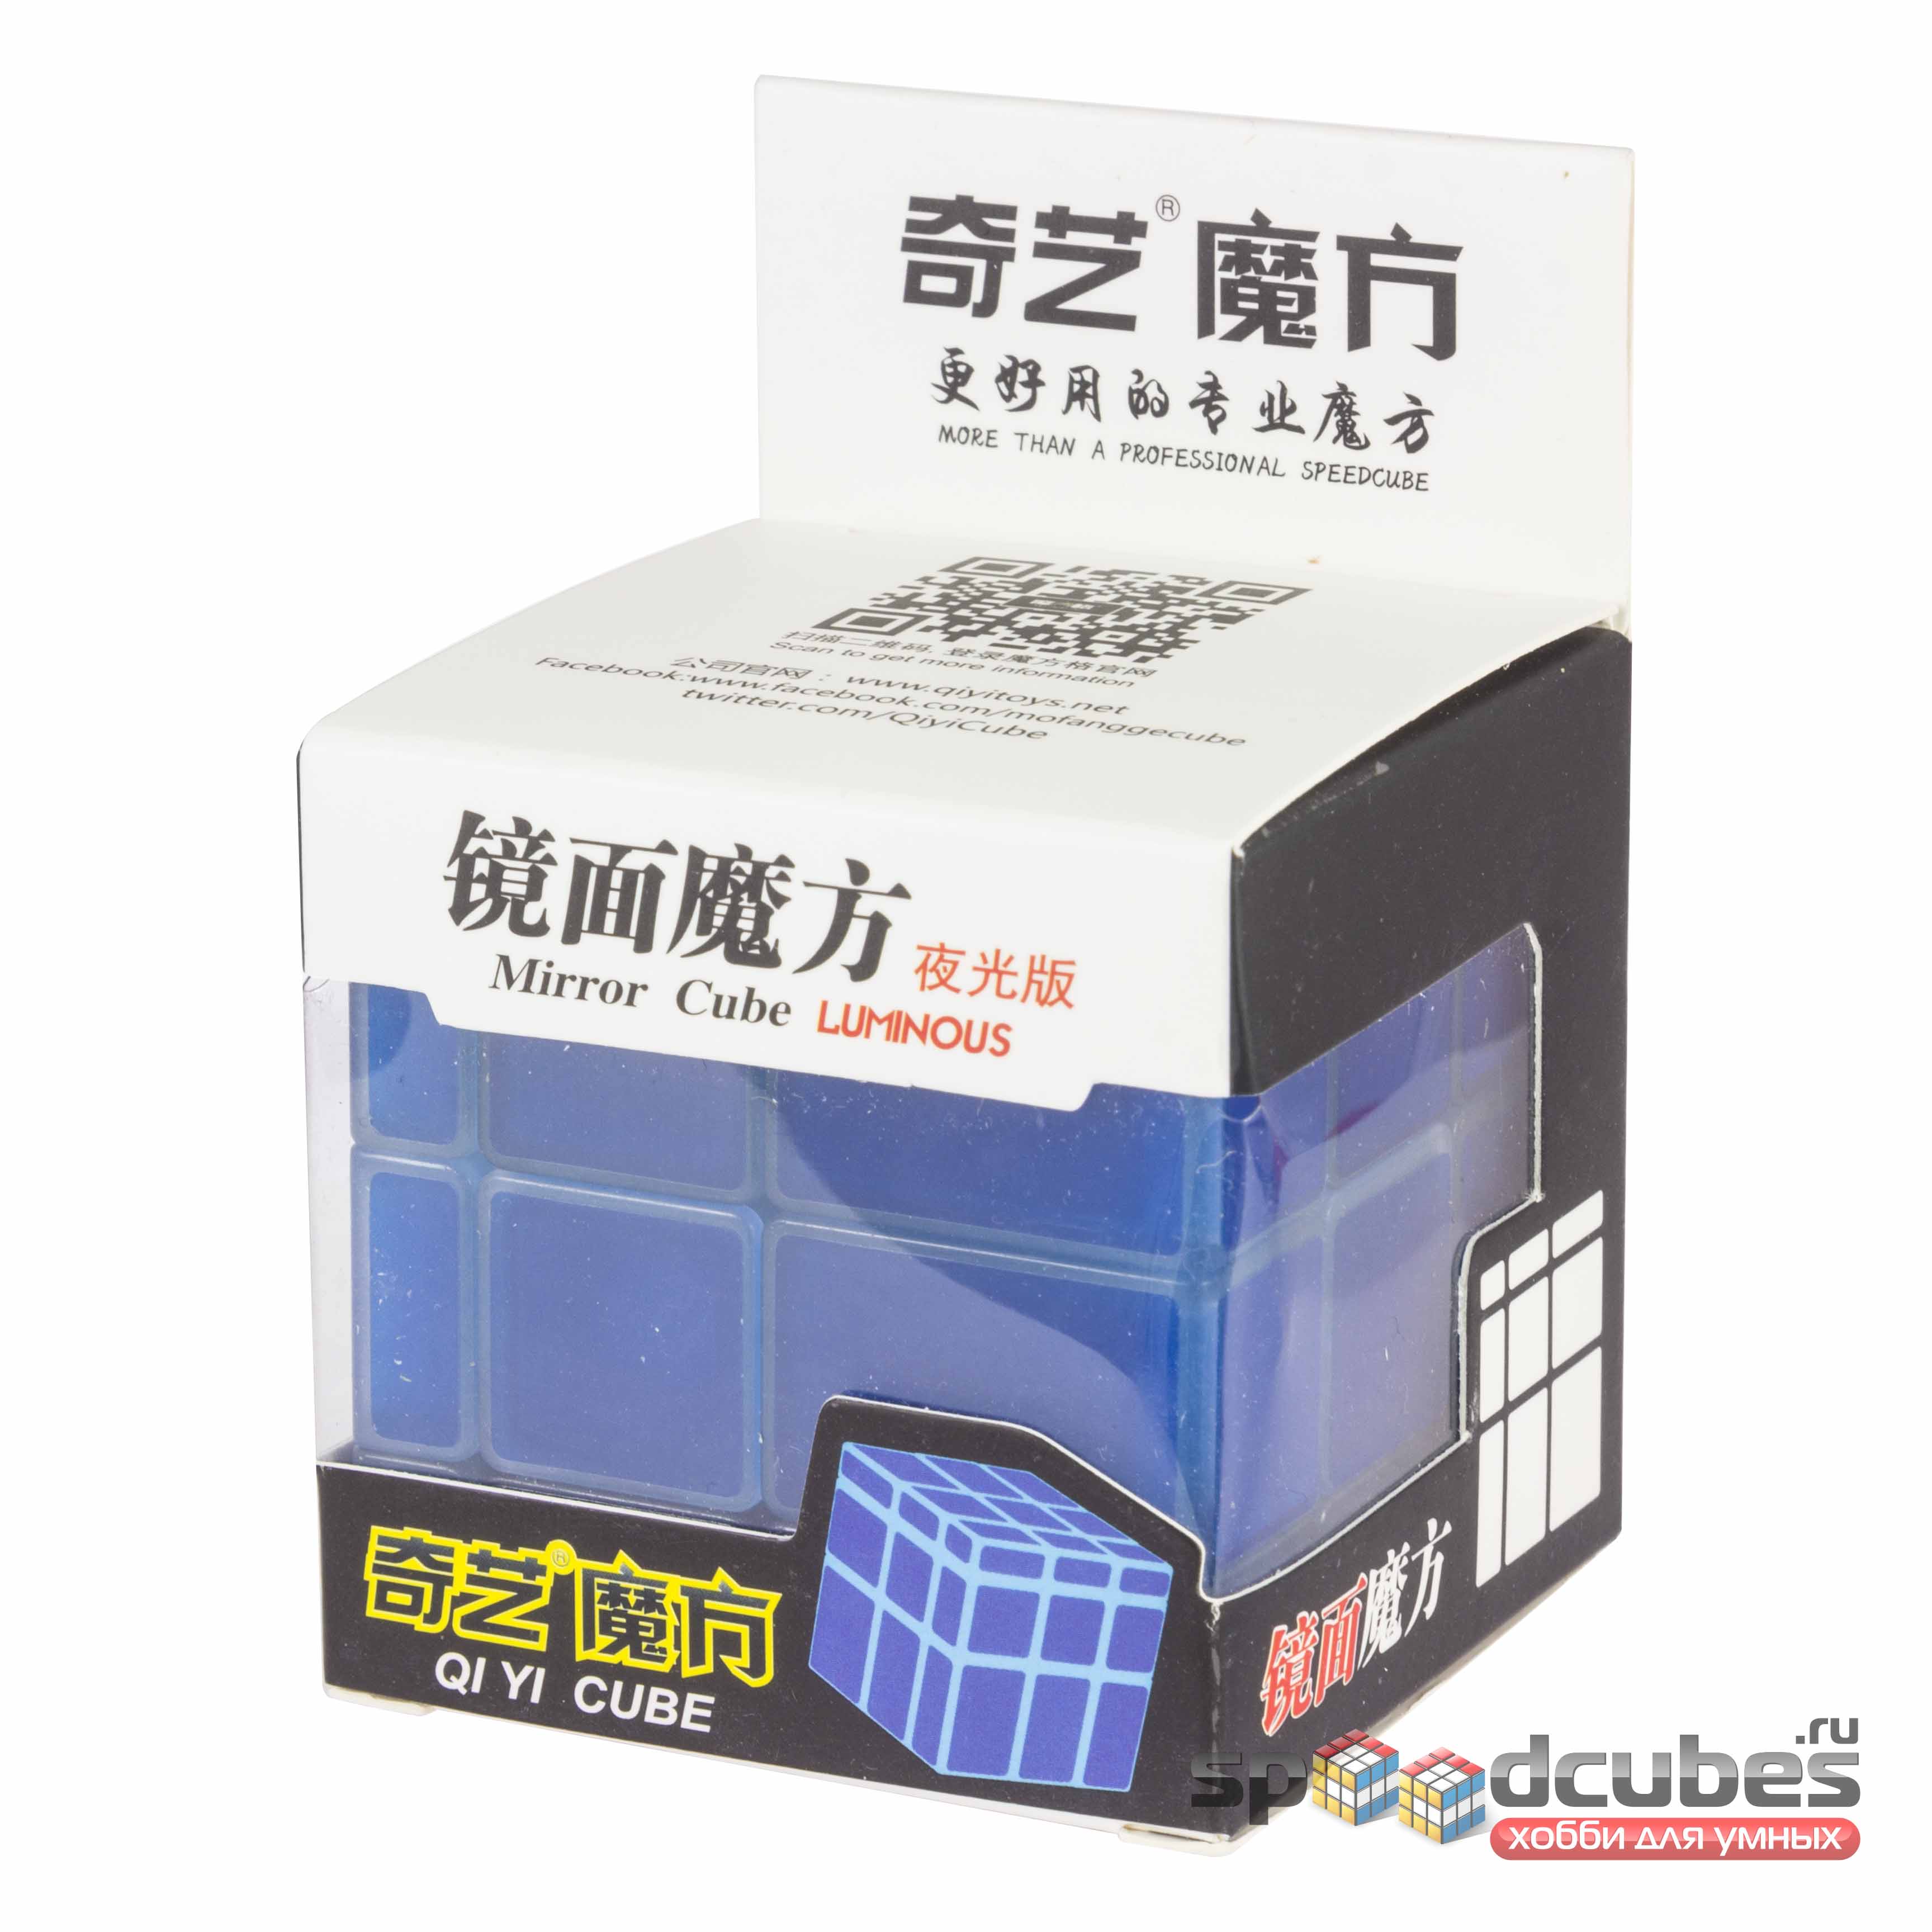 QiYi (MoFangGe) Luminous Mirror Cube 1